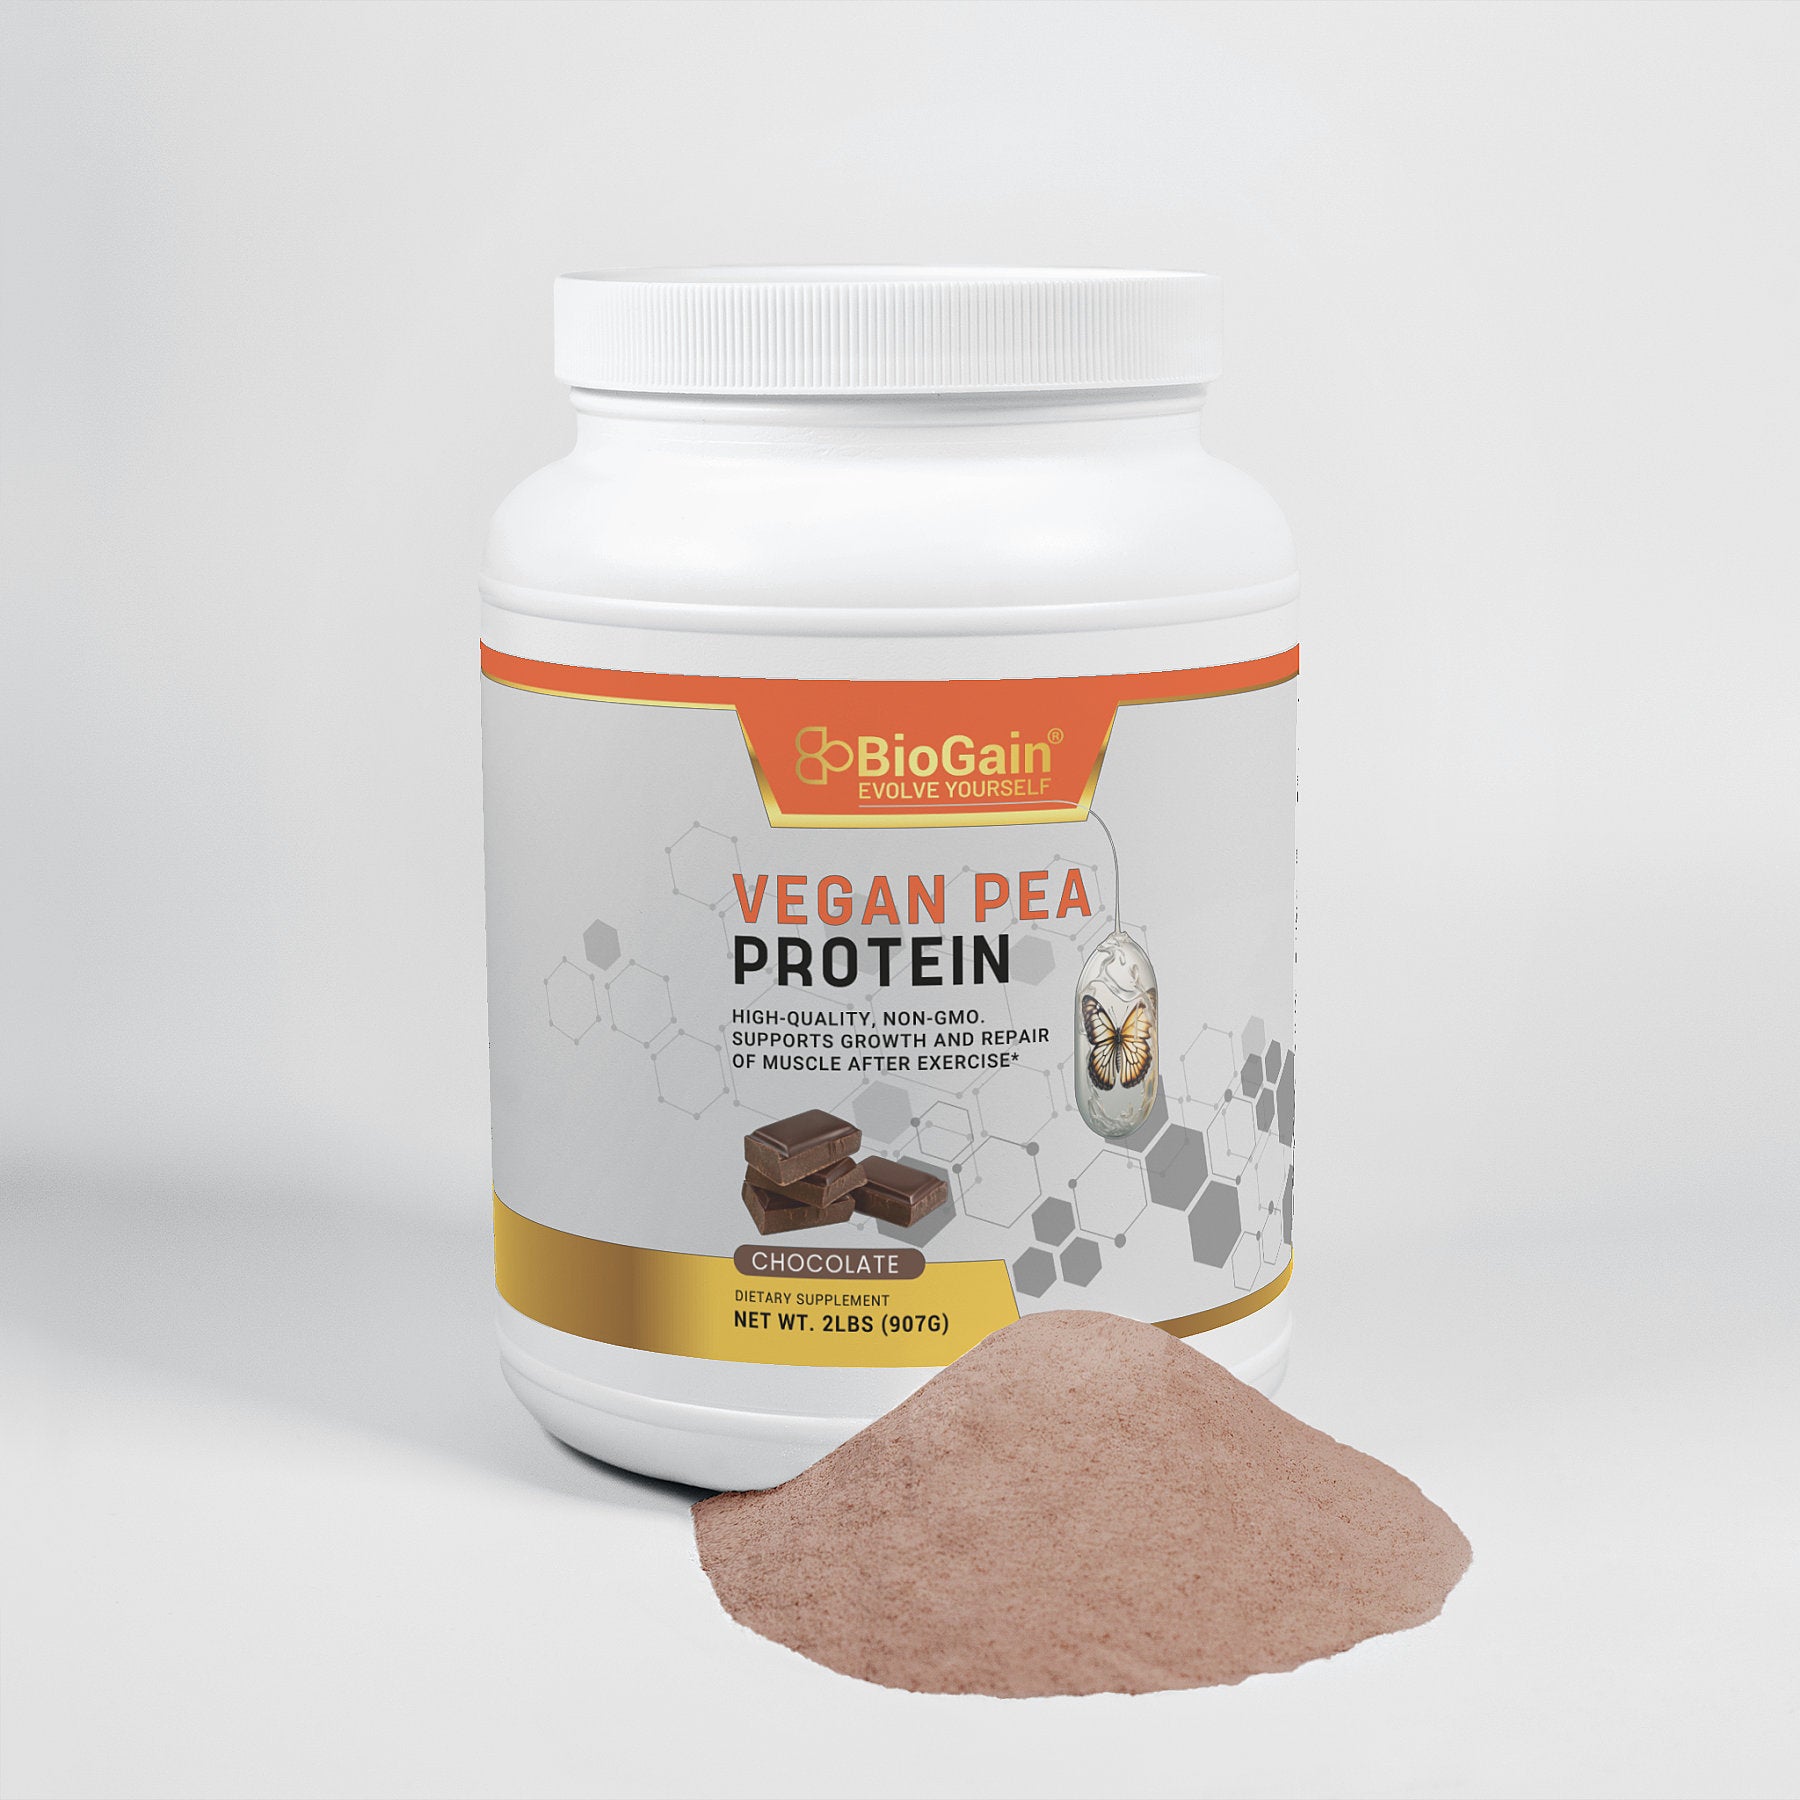 BioGain Vegan Pea Protein (Chocolate)